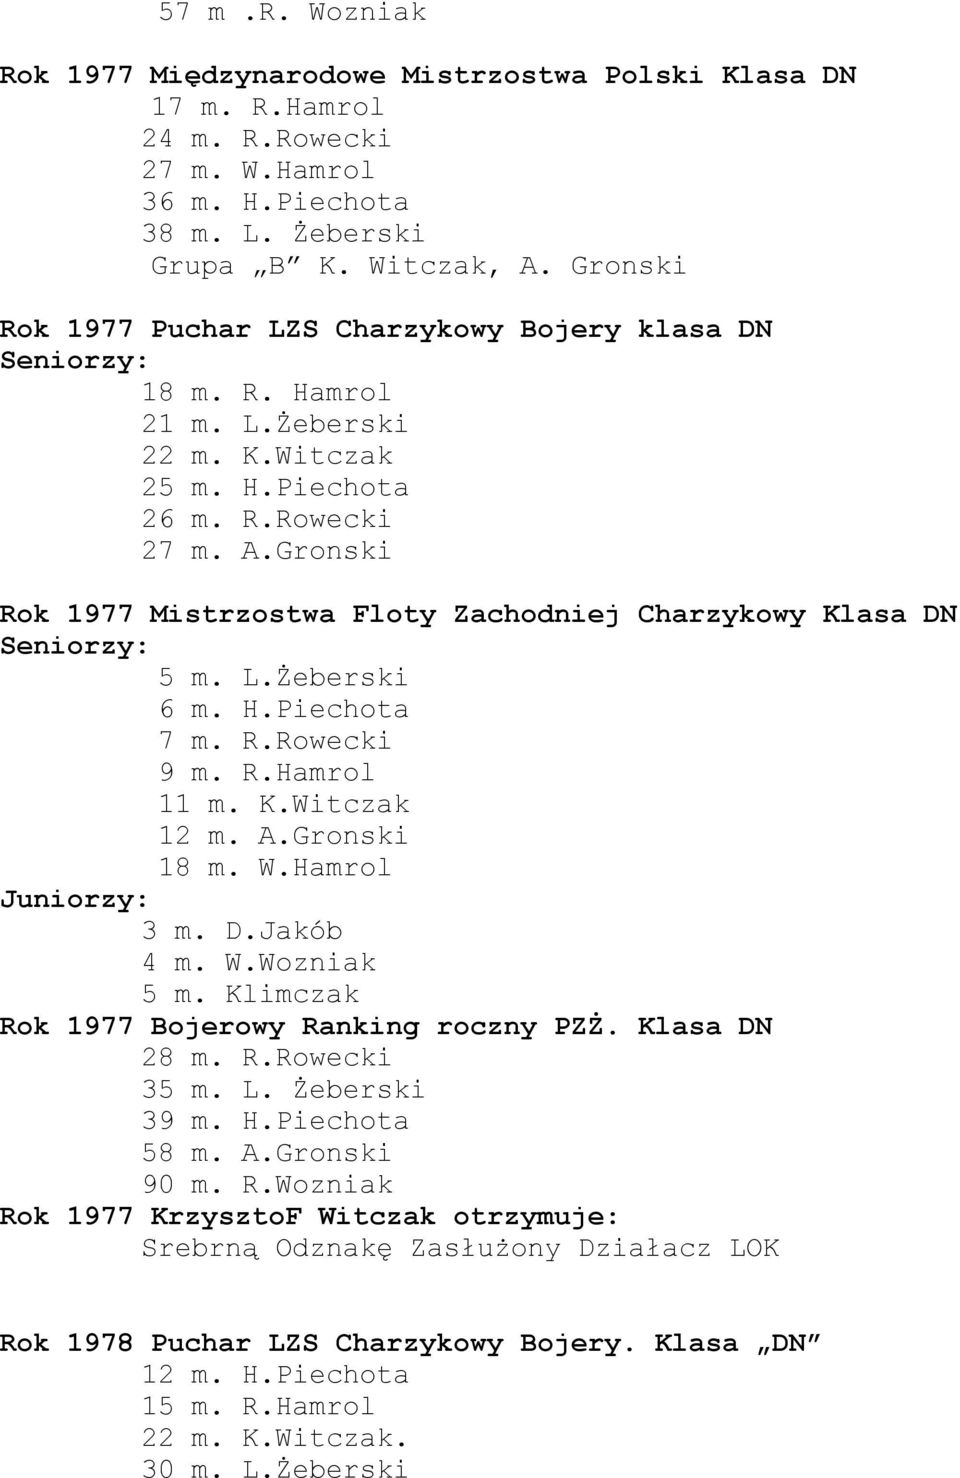 Gronski Rok 1977 Mistrzostwa Floty Zachodniej Charzykowy 5 m. L.Żeberski 6 m. H.Piechota 7 m. R.Rowecki 9 m. R.Hamrol 11 m. K.Witczak 12 m. A.Gronski 18 m. W.Hamrol Juniorzy: 3 m. D.Jakób 4 m. W.Wozniak 5 m.